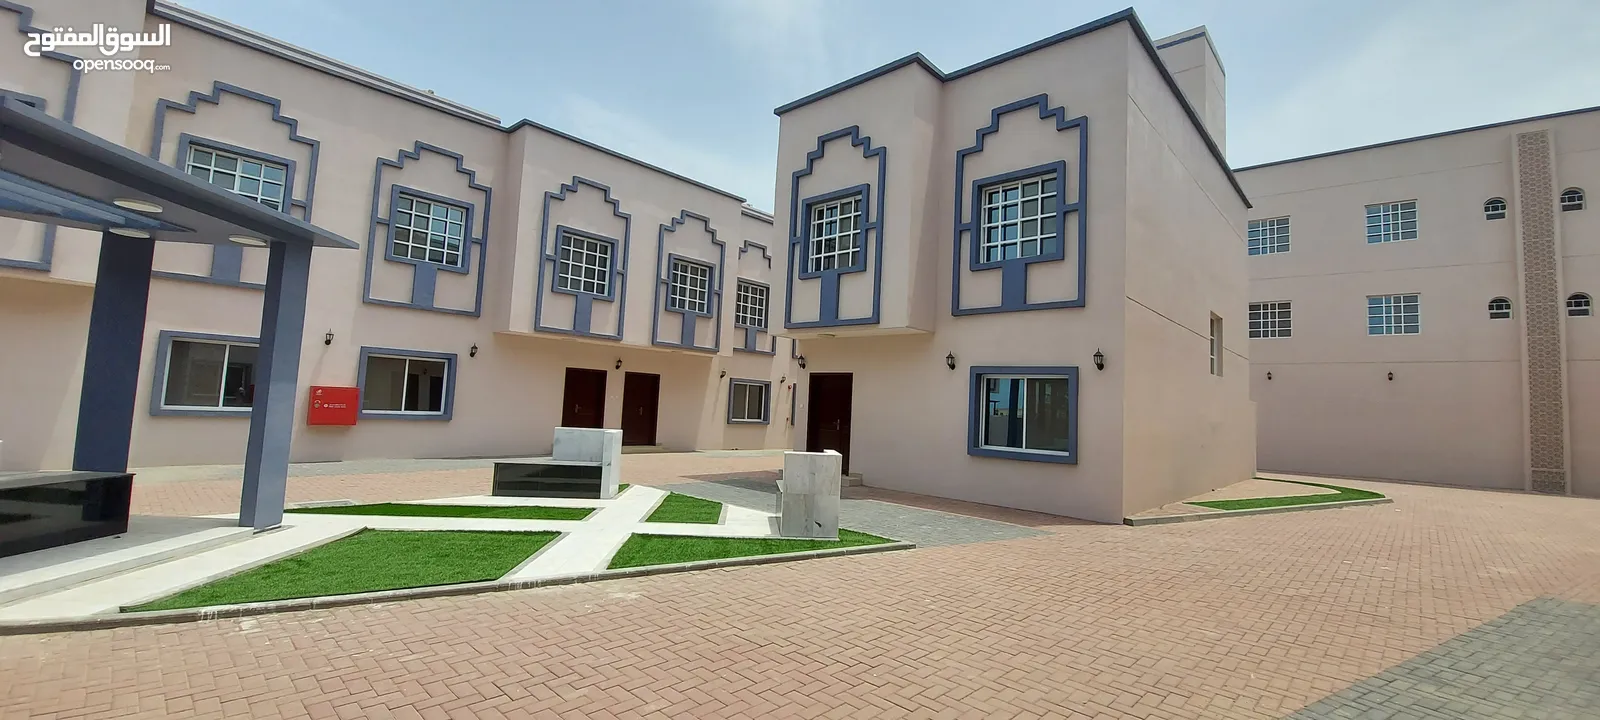 فلل للإيجار صحار - عمق Villas for rent Sohar - Amq